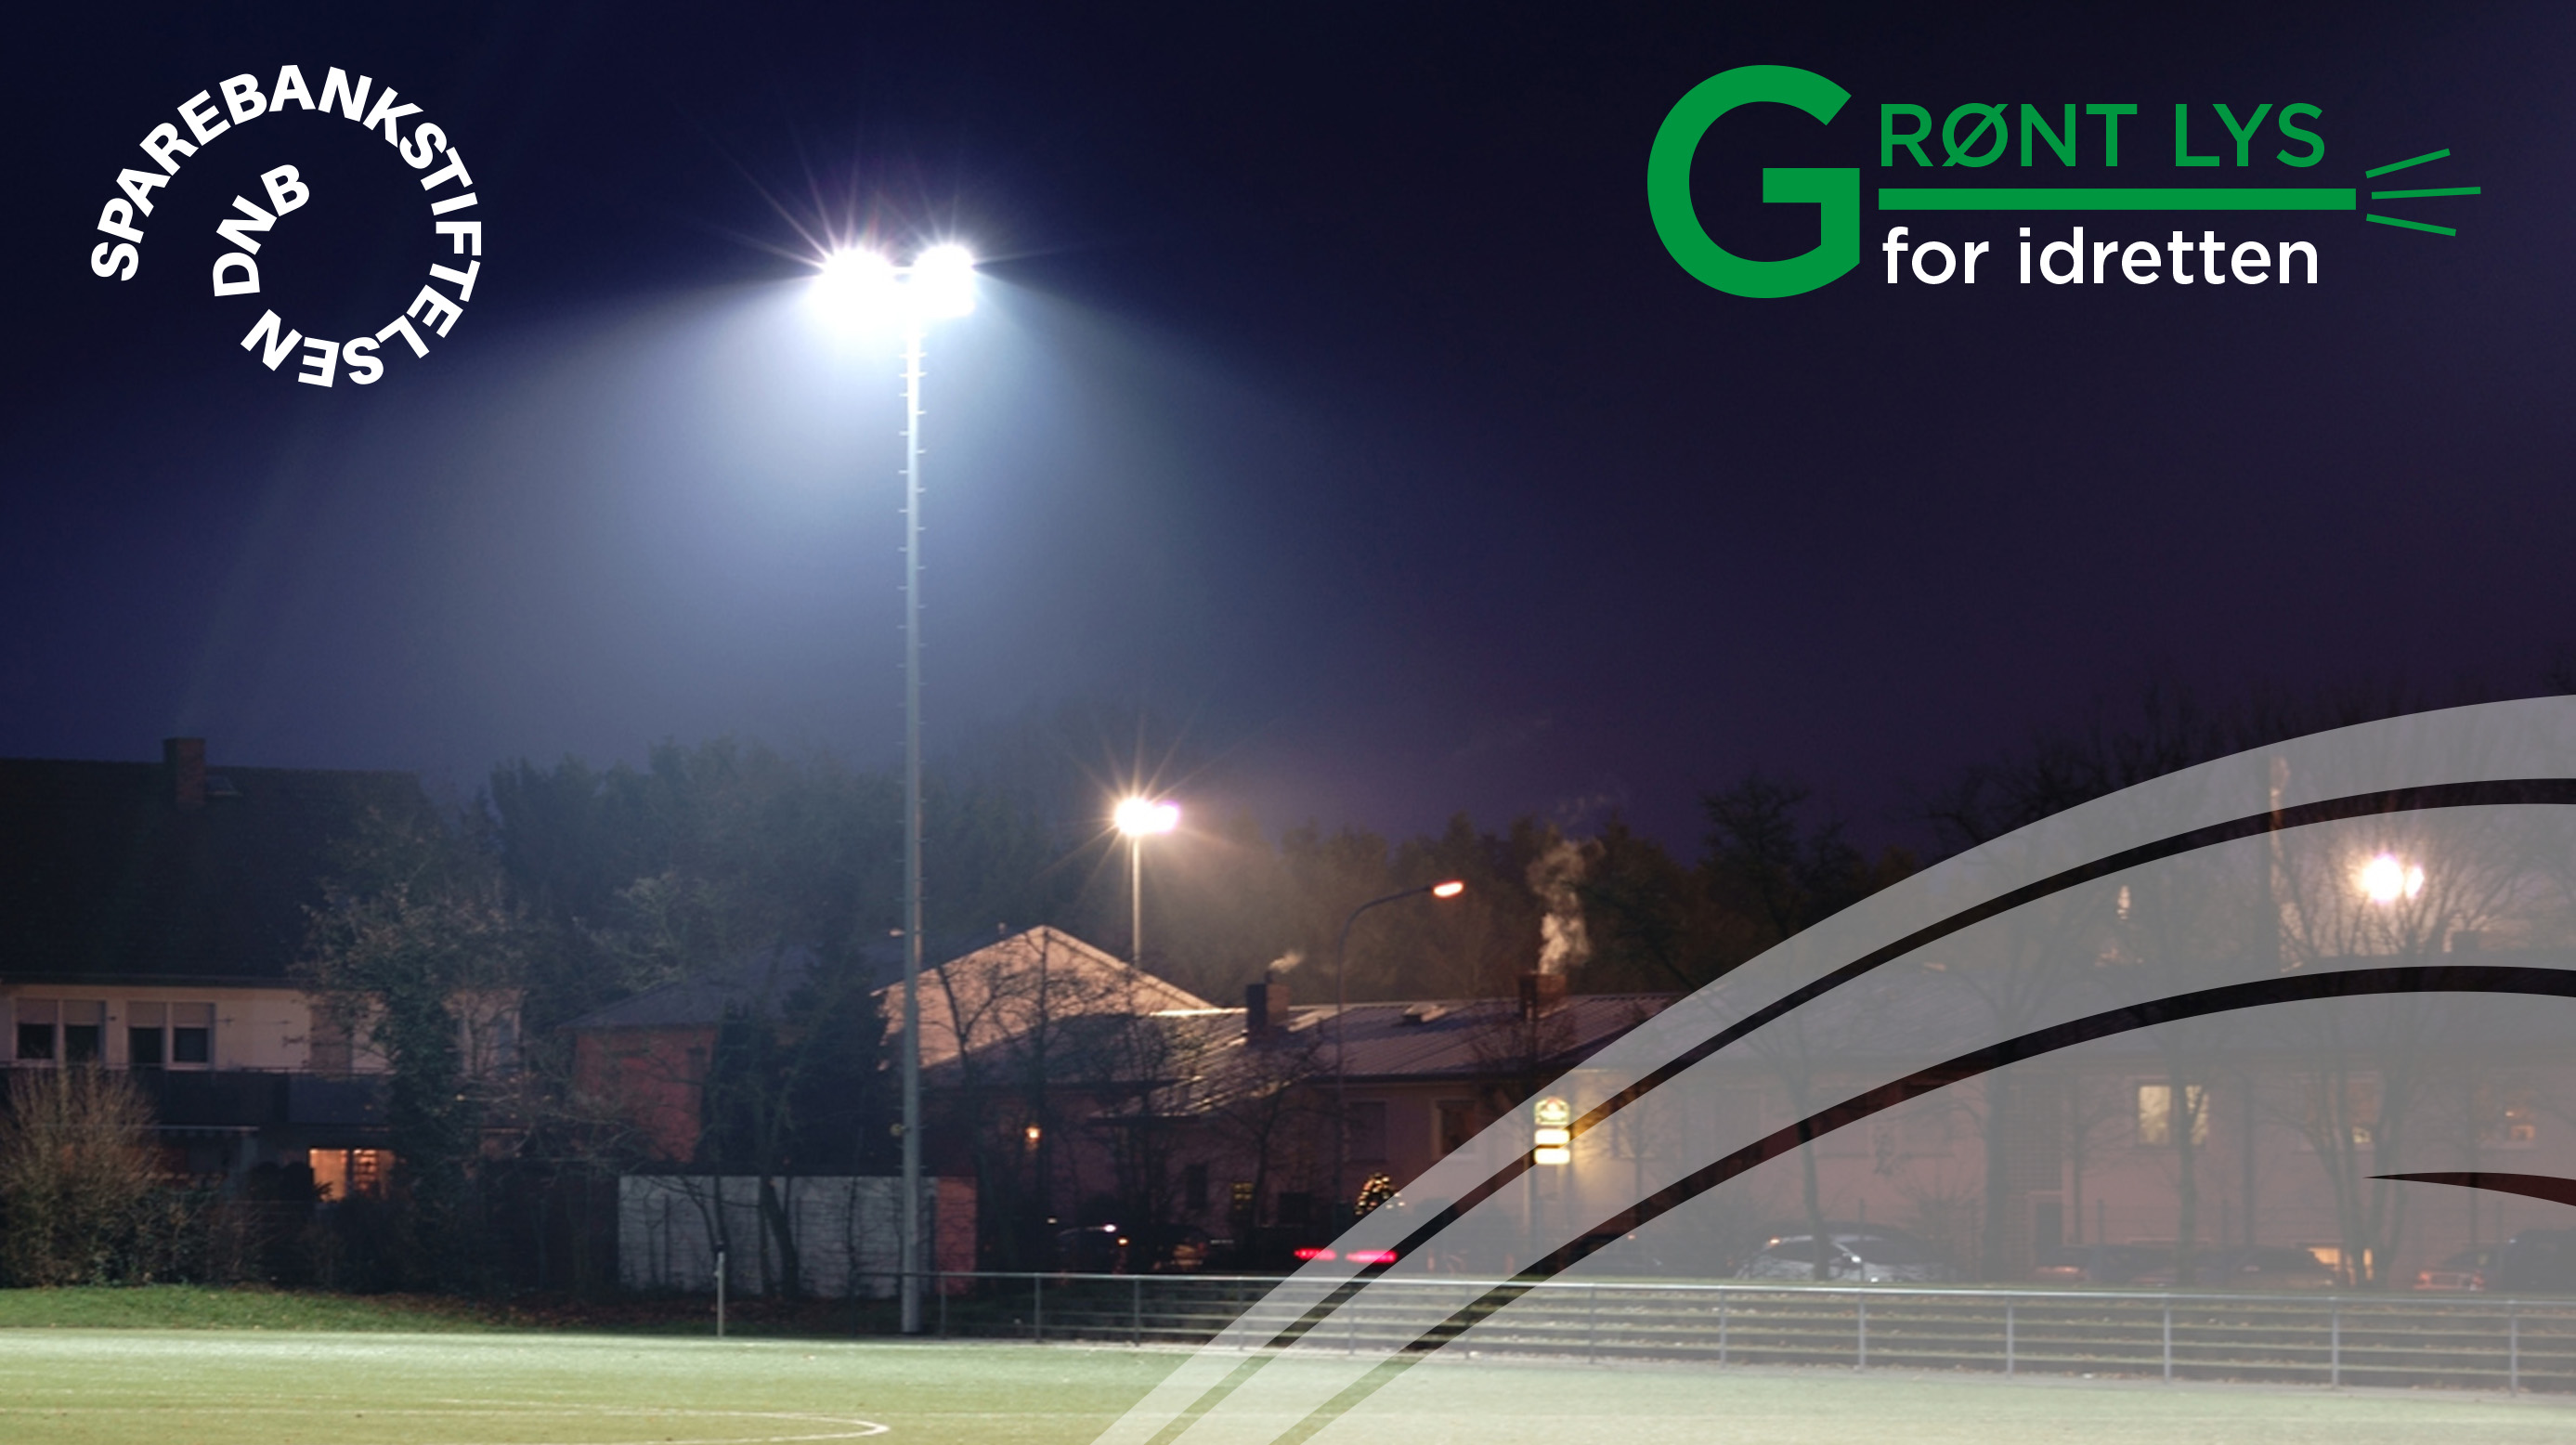 Grønt lys for idretten er et samarbeid med Sparebankstiftelsen DNB